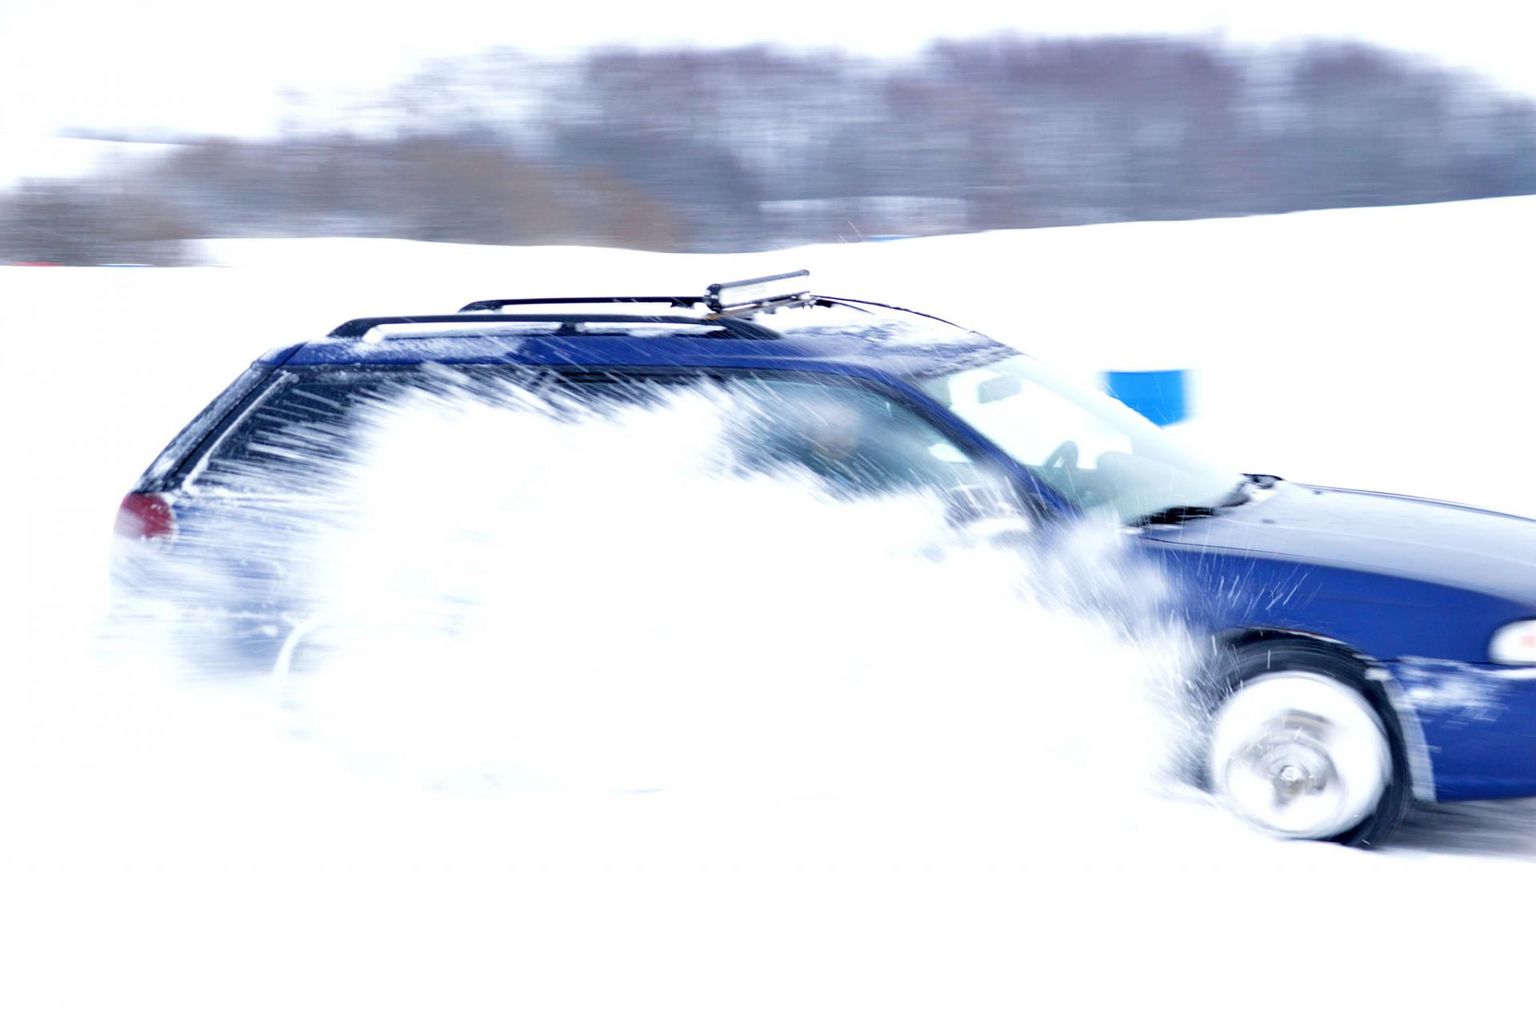 Linnatänavad ei ole driftimiseks, selleks sobivad jäärajad. Subaru Lasila põllul.